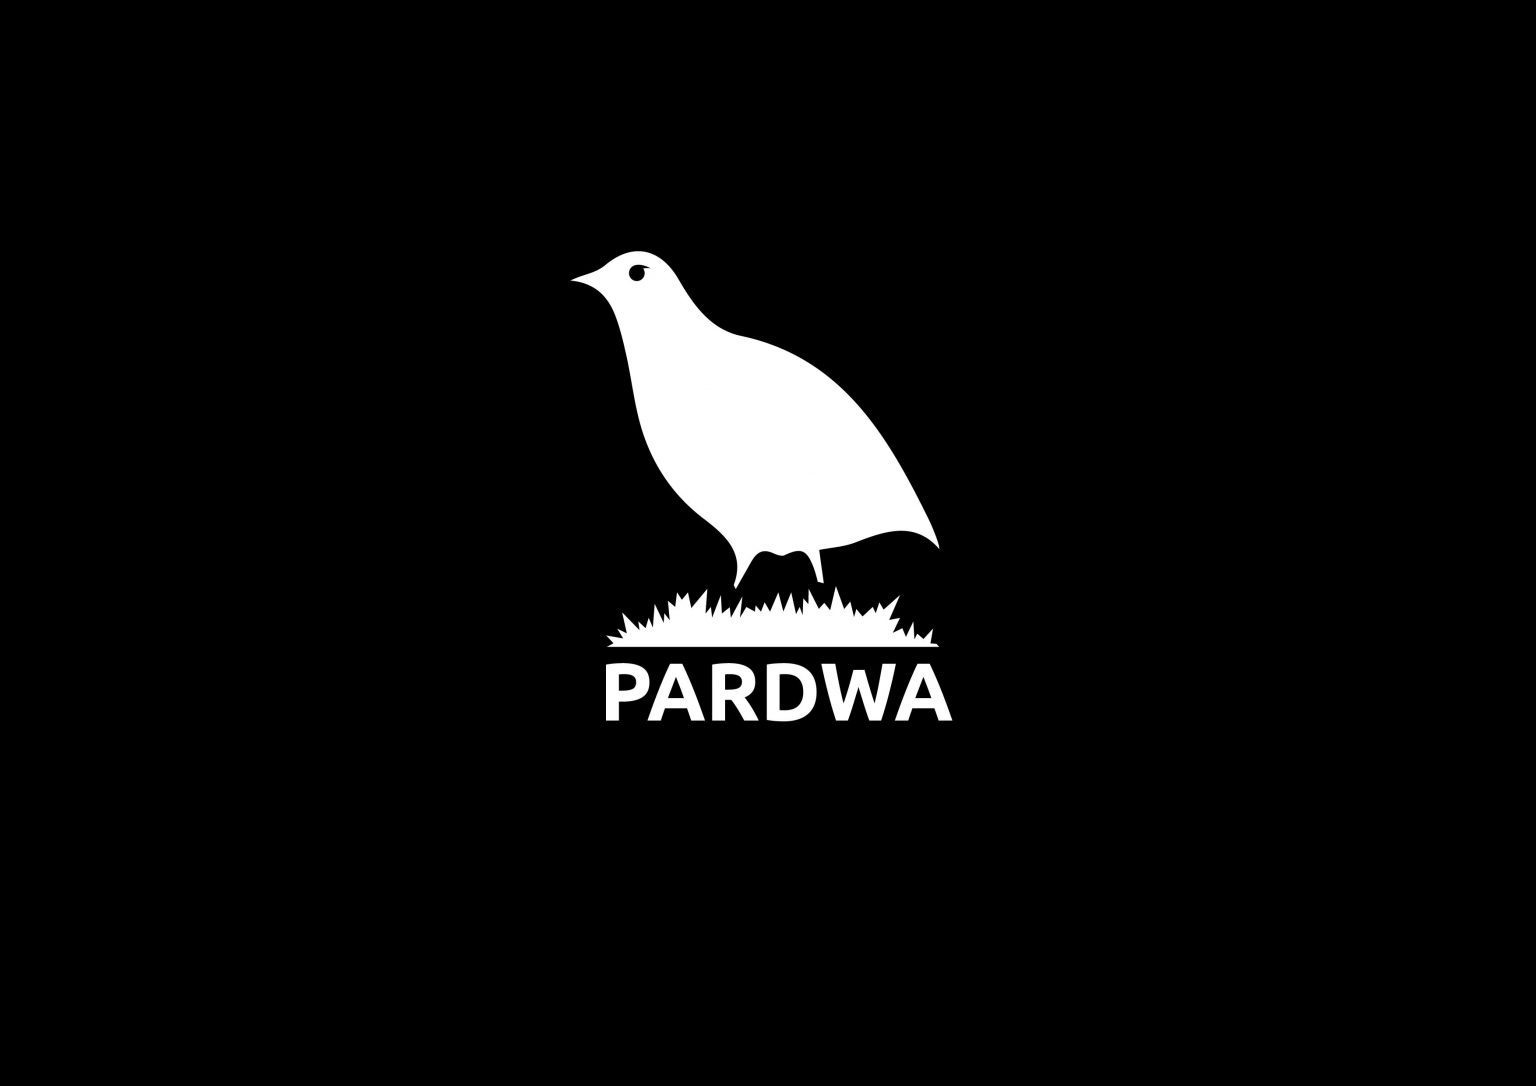 wydawnictwo_pardwa